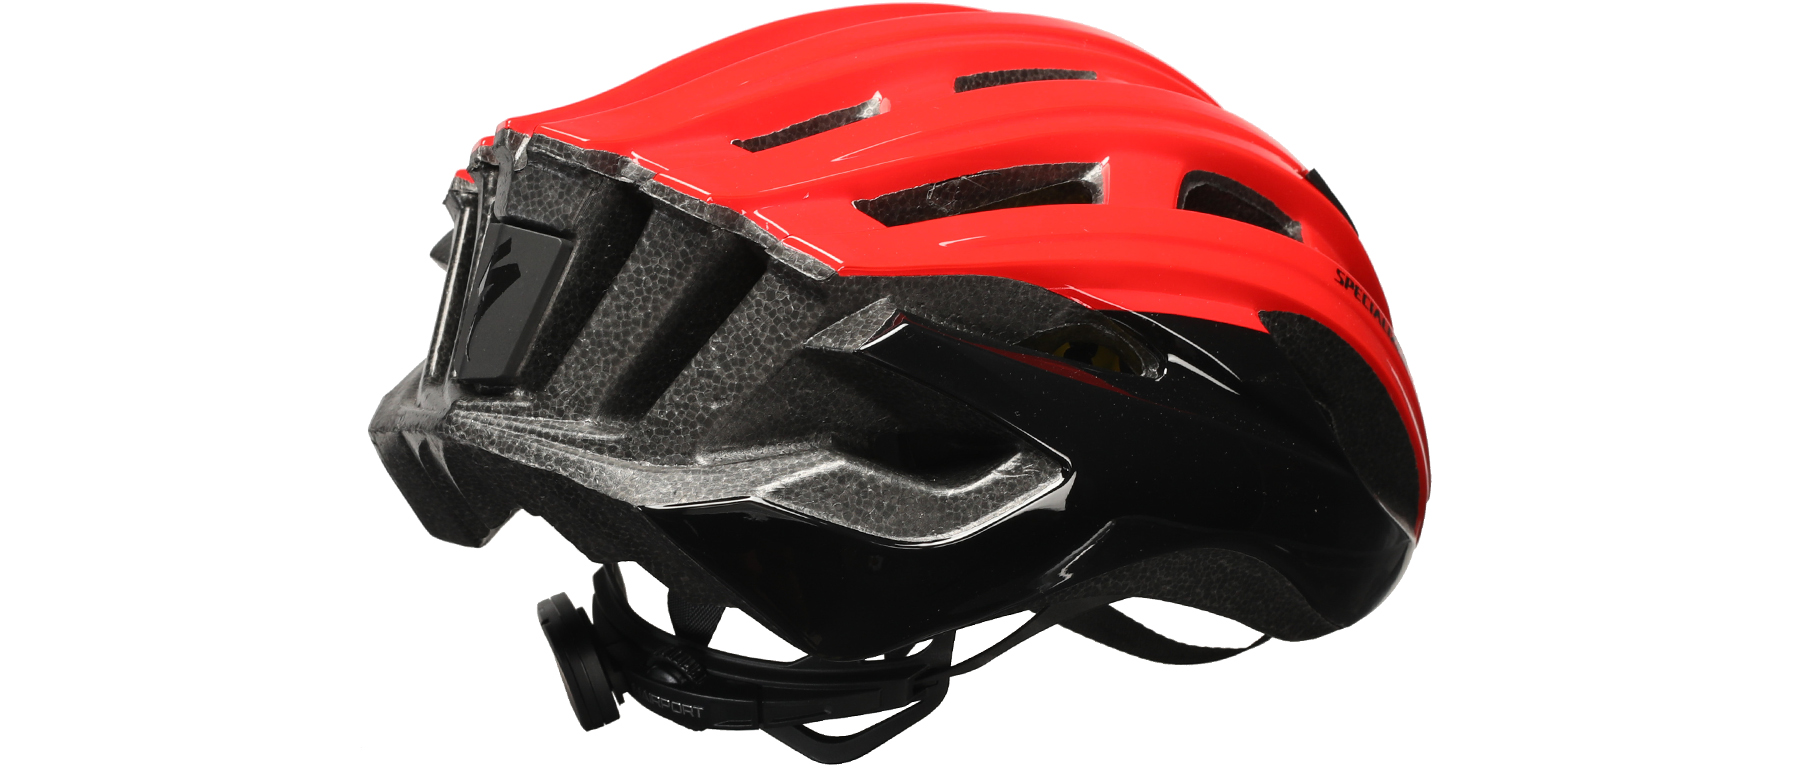 Specialized Propero III MIPS Helmet